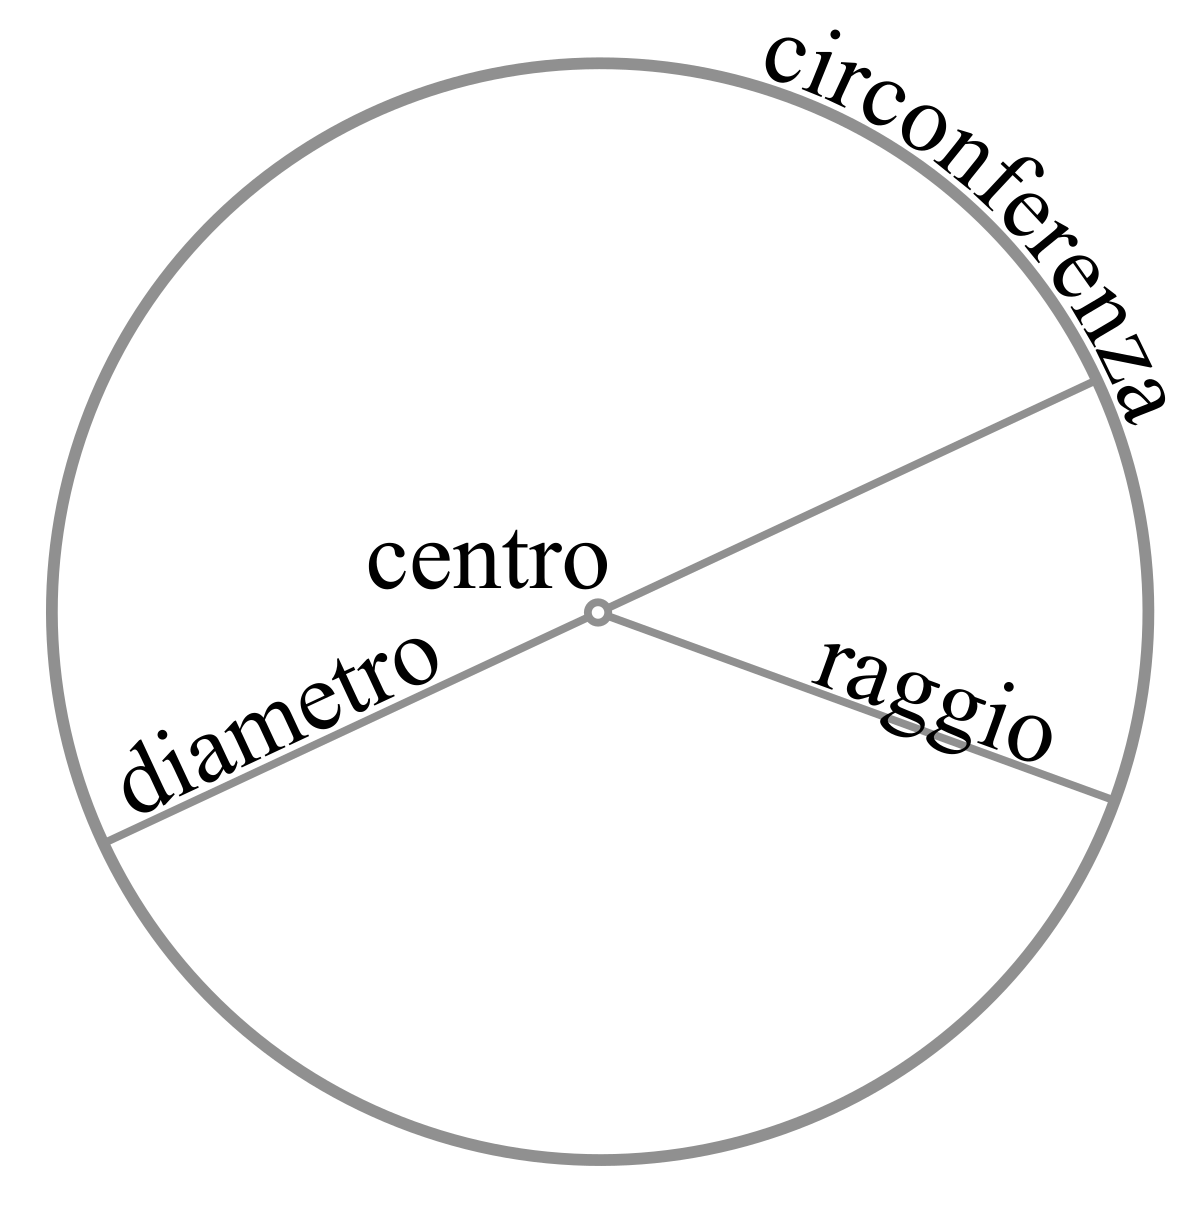 Cerchio - Wikipedia